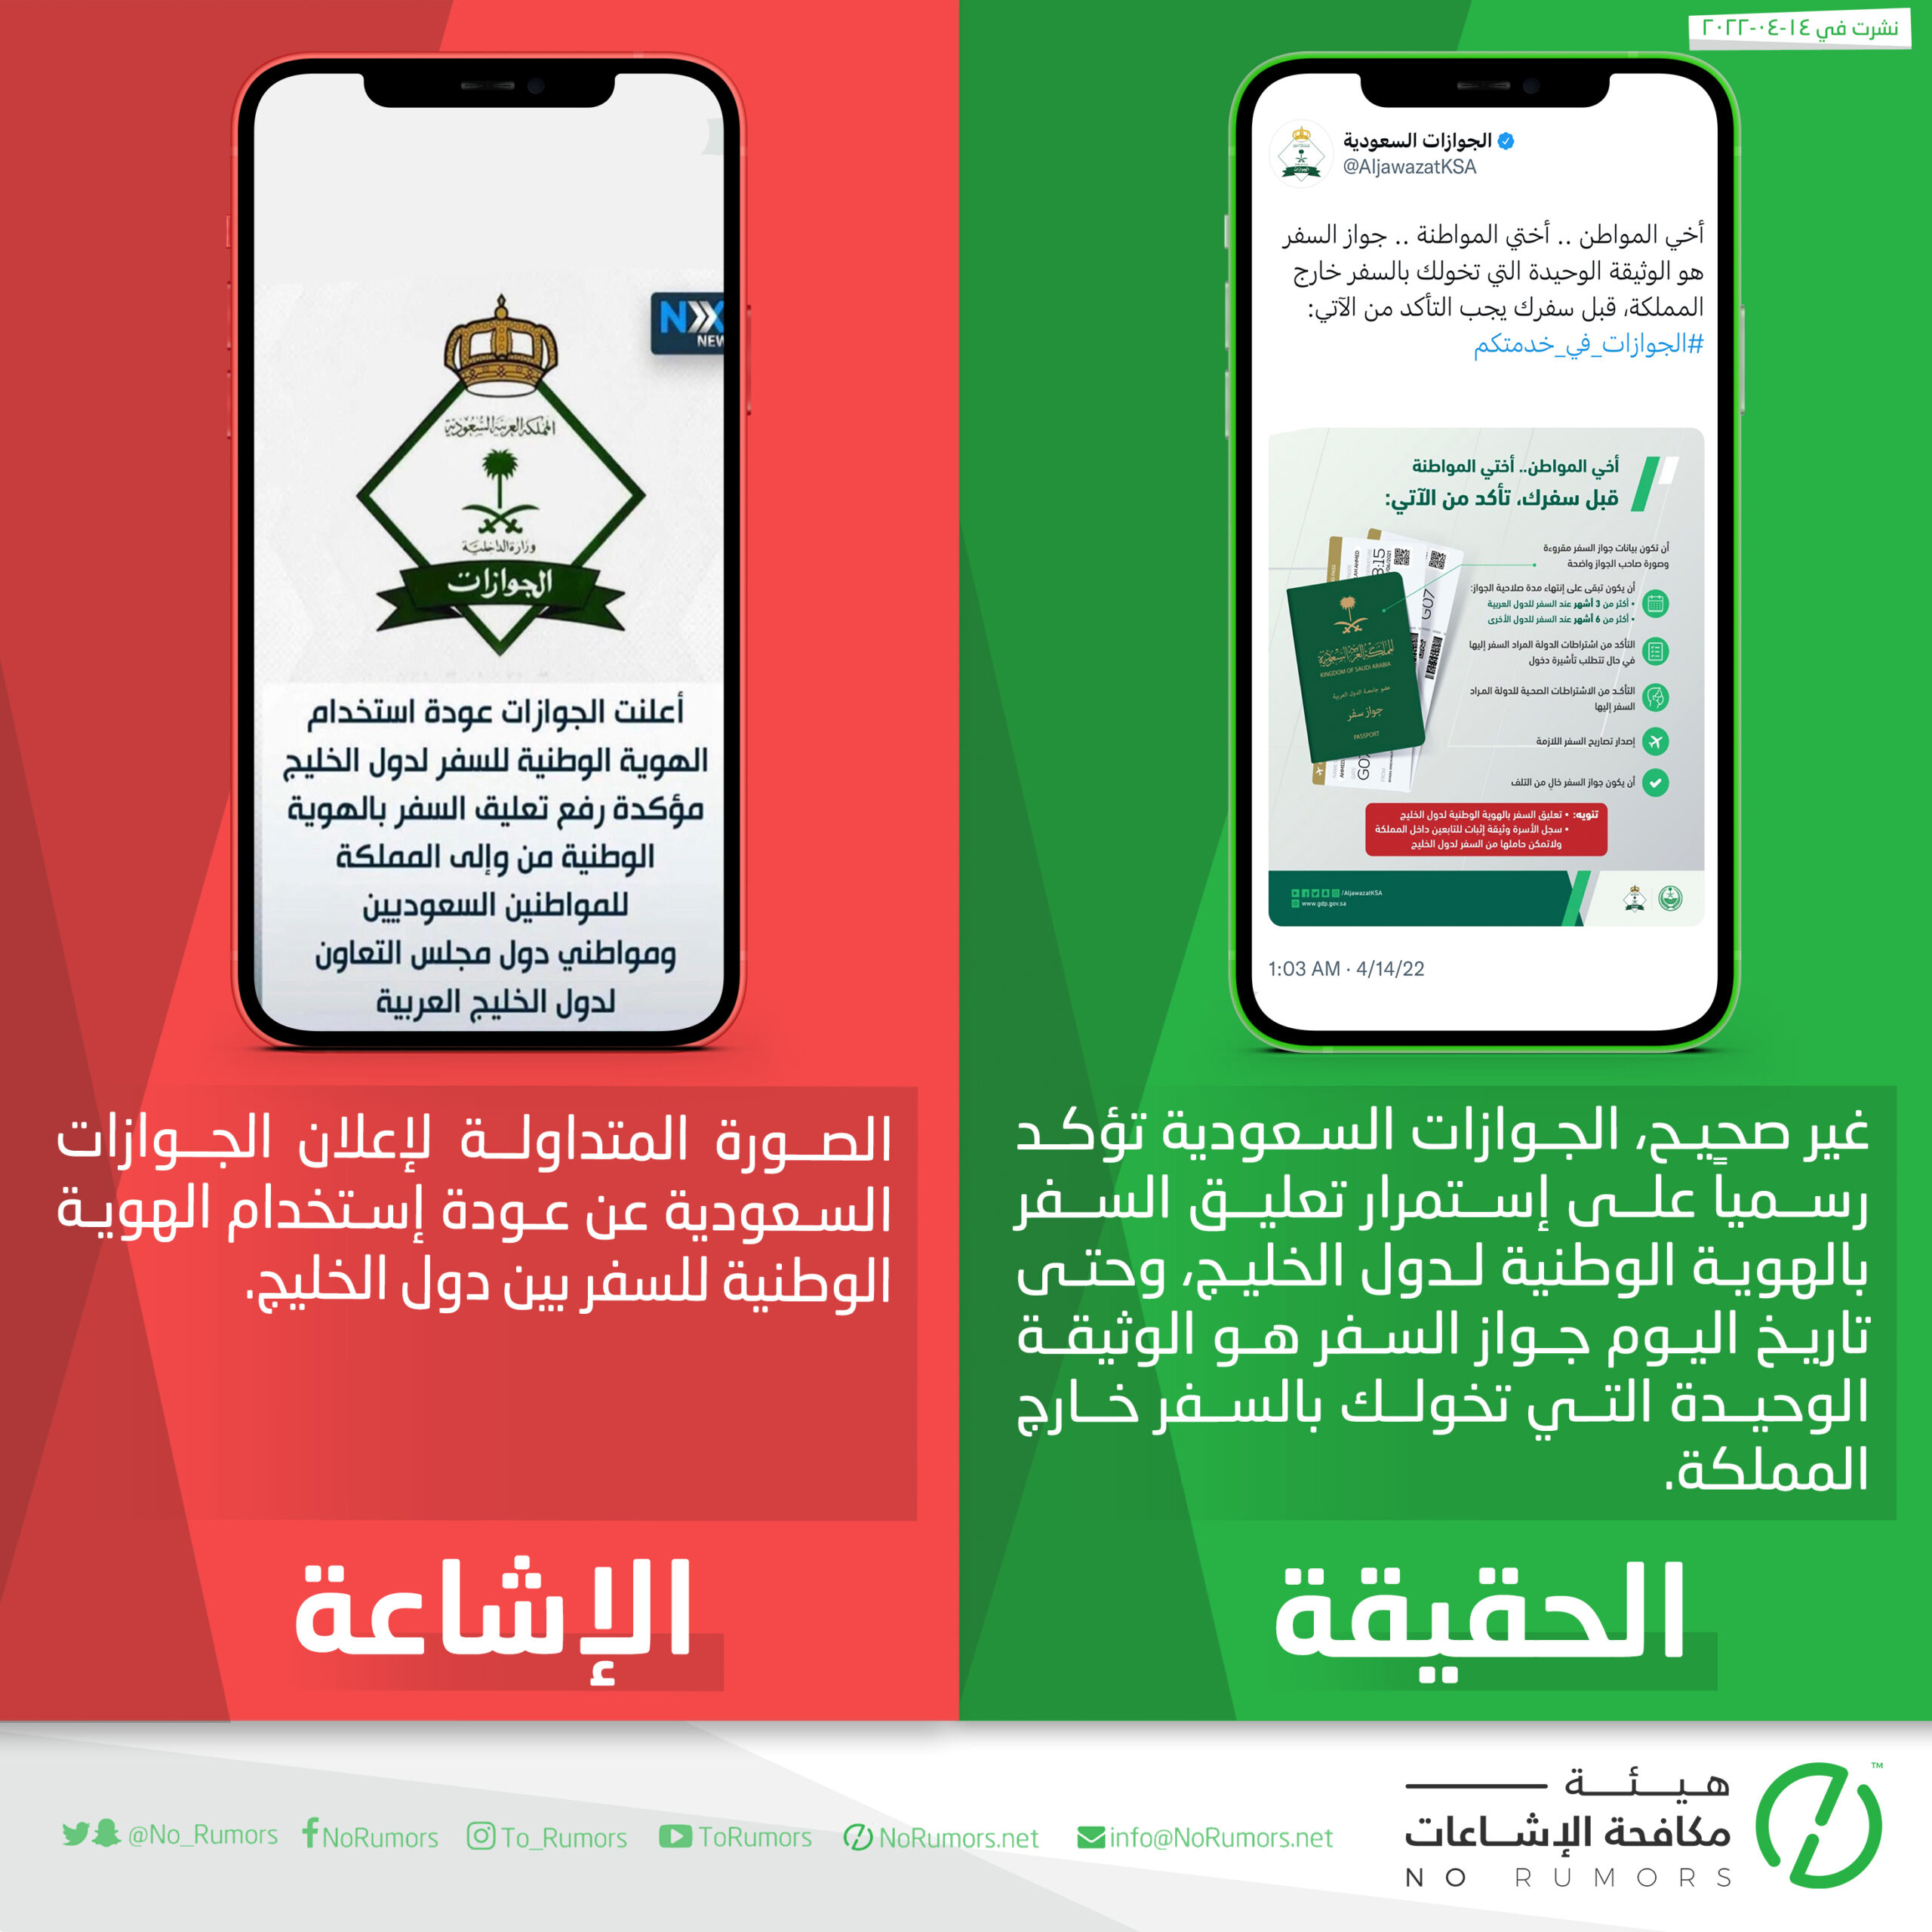 حقيقة الخبر المتداول عن إعلان الجوازات السعودية عودة إستخدام الهوية الوطنية للسفر بين دول الخليج